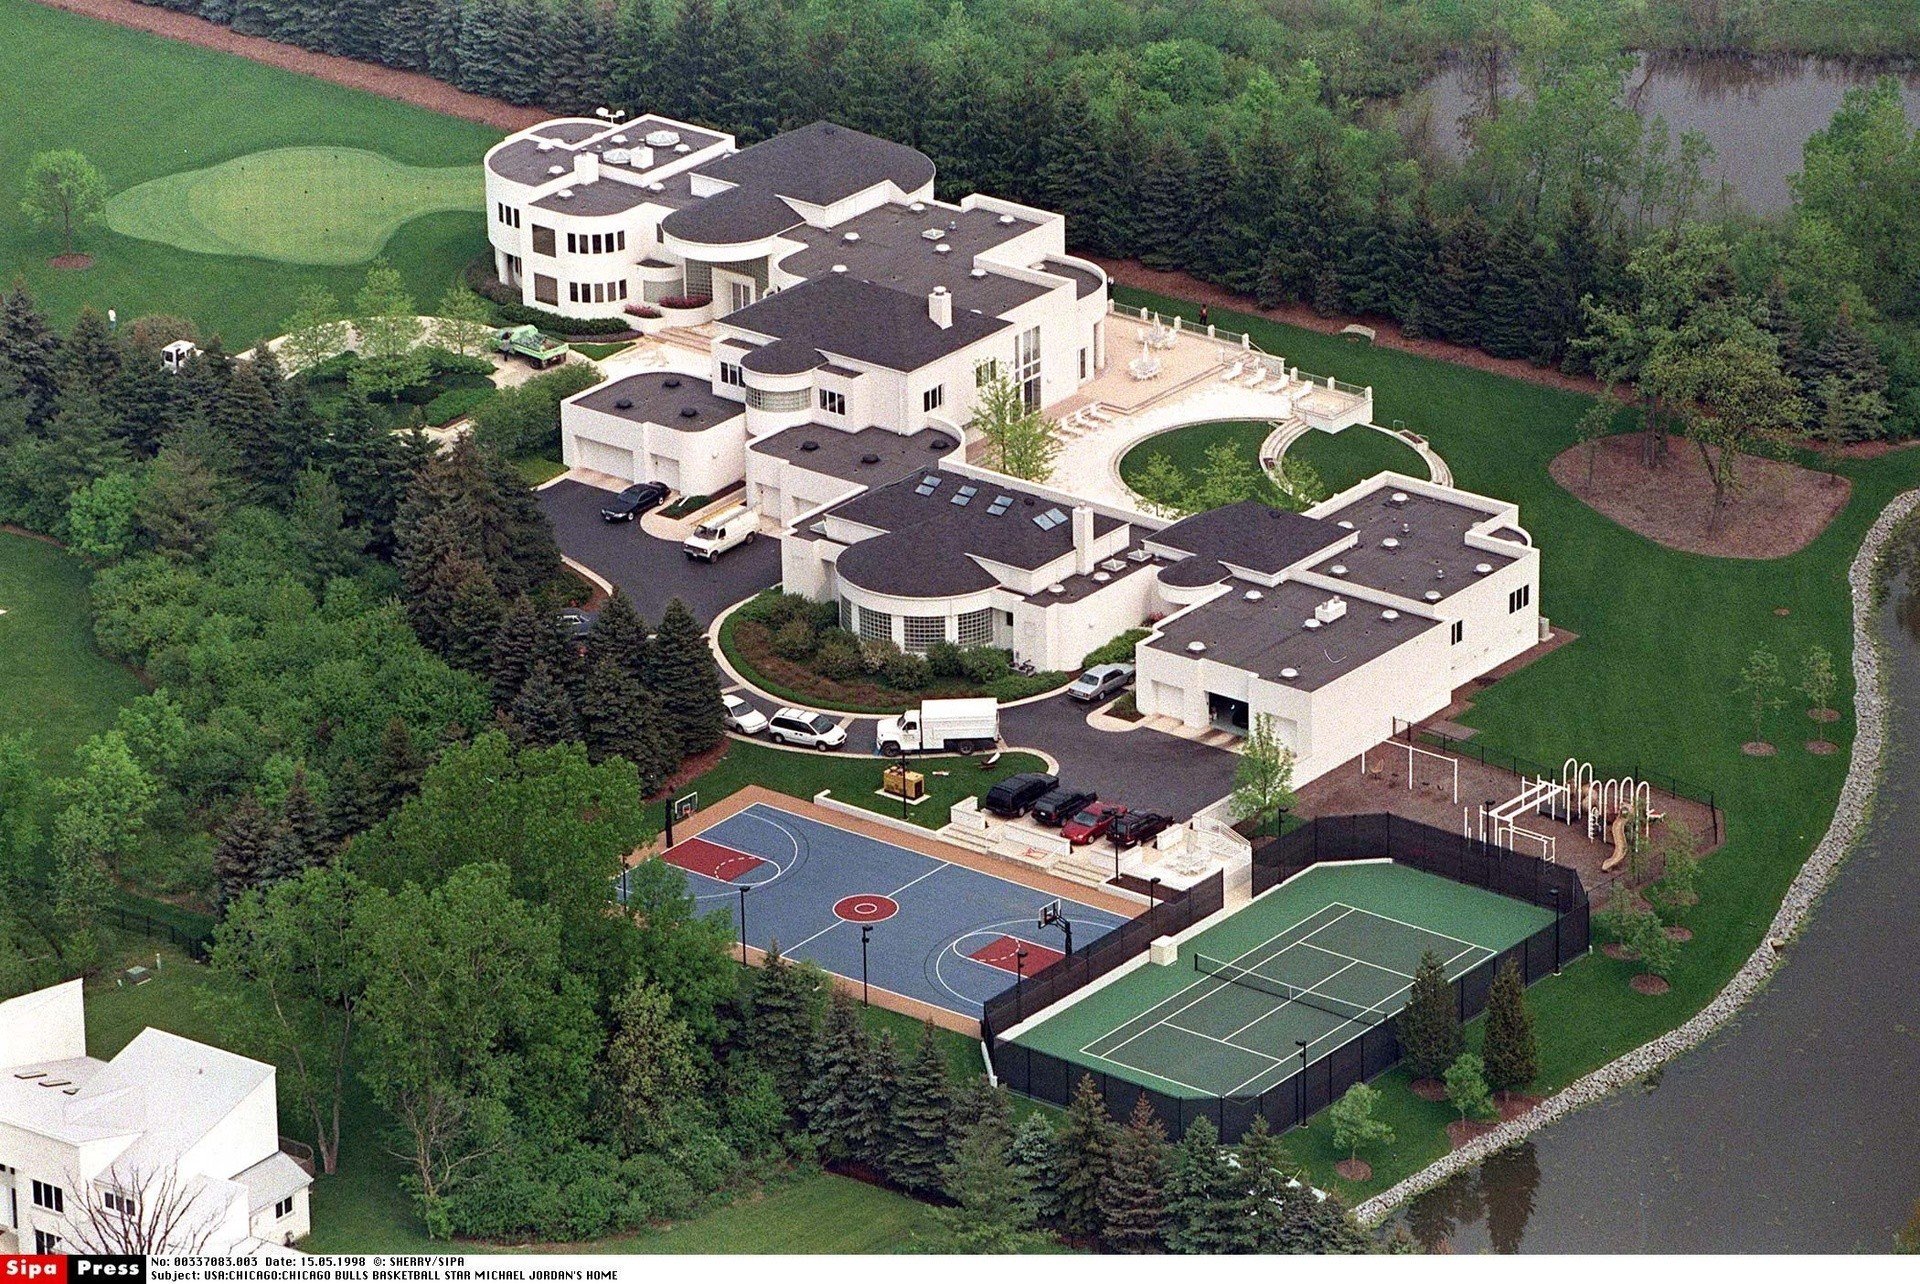 Michael Jordan od lat może sprzedać willi w Chicago, zobaczcie dom legendy NBA (Zdjęcia) | Portal i.pl